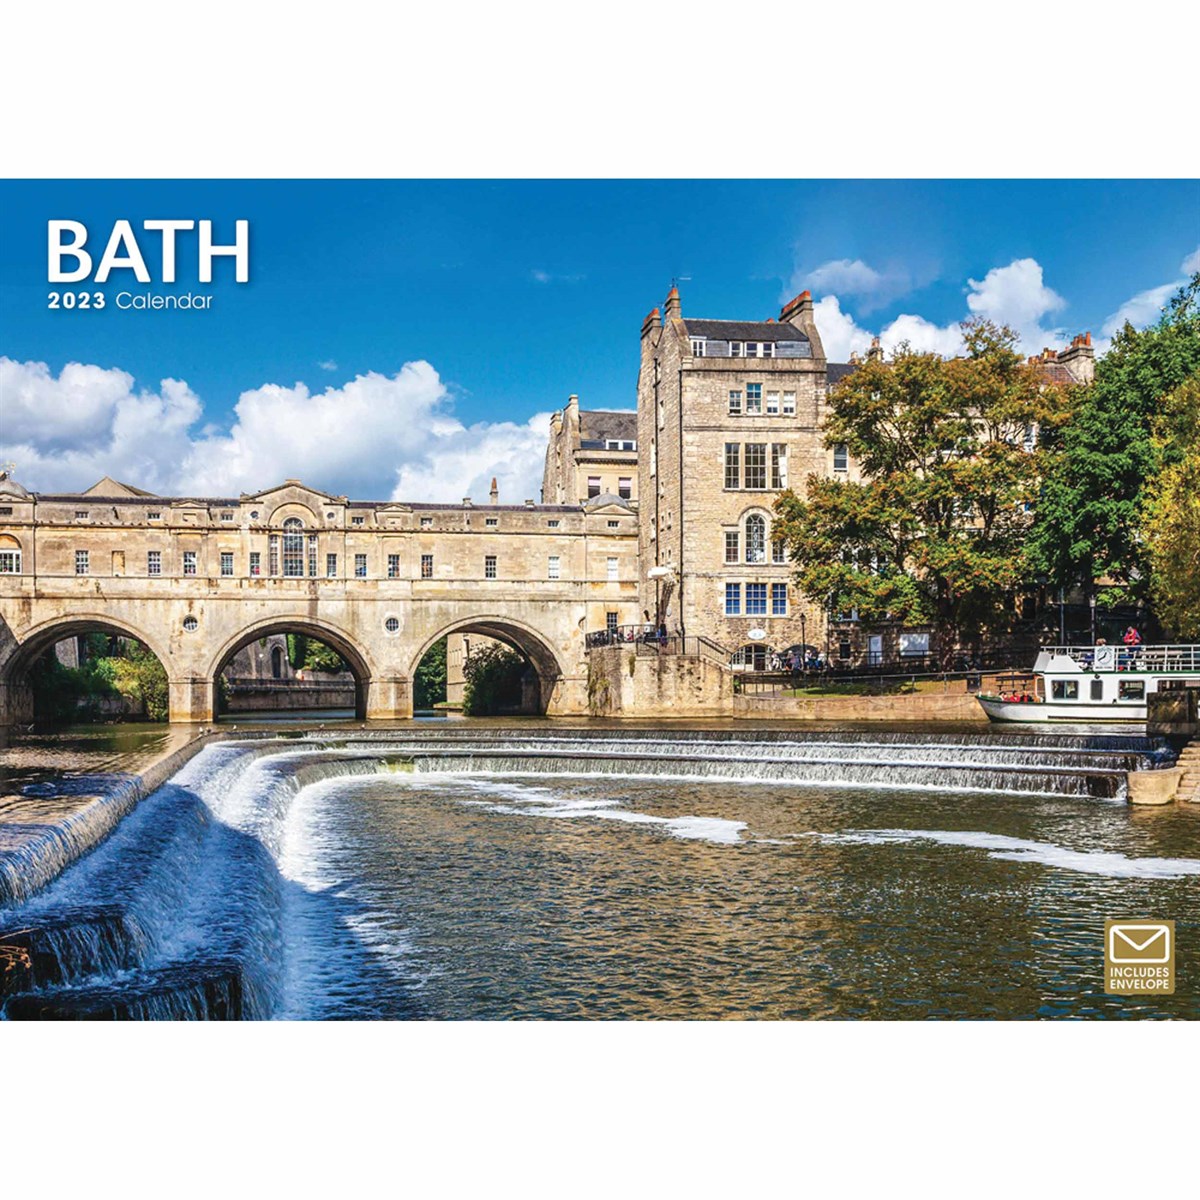 Bath A4 2023 Calendars